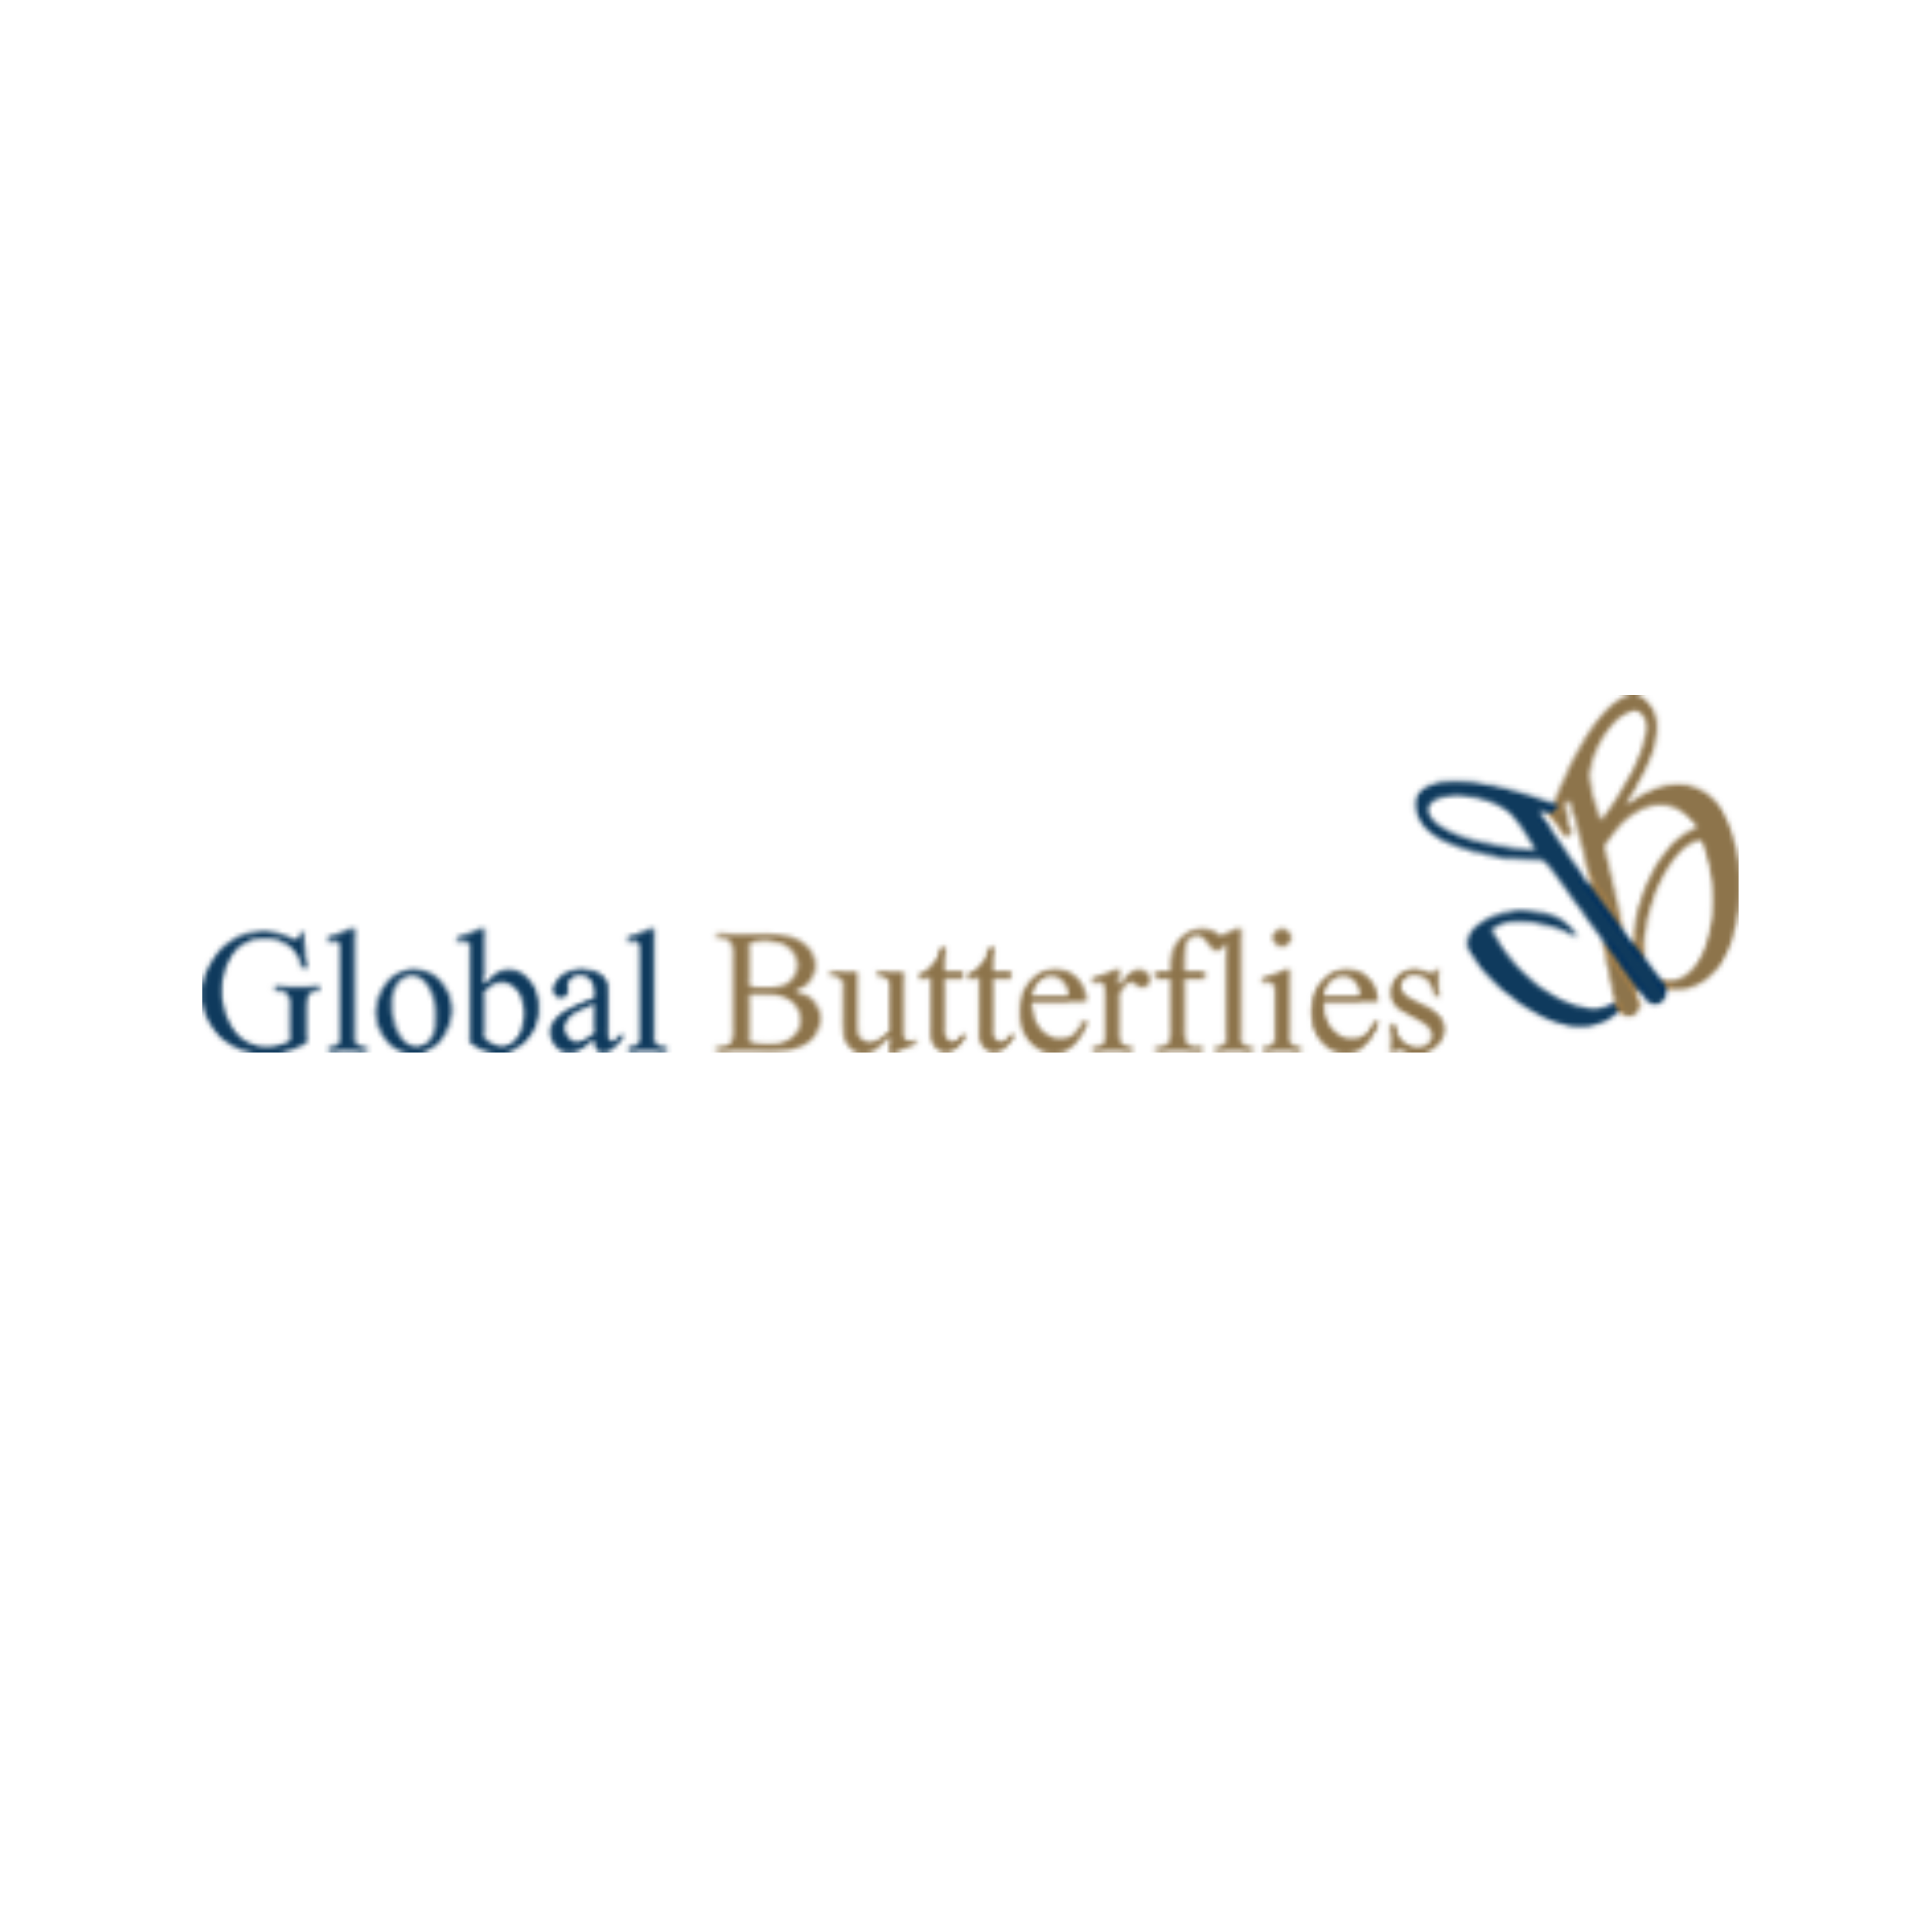 Global Butterflies